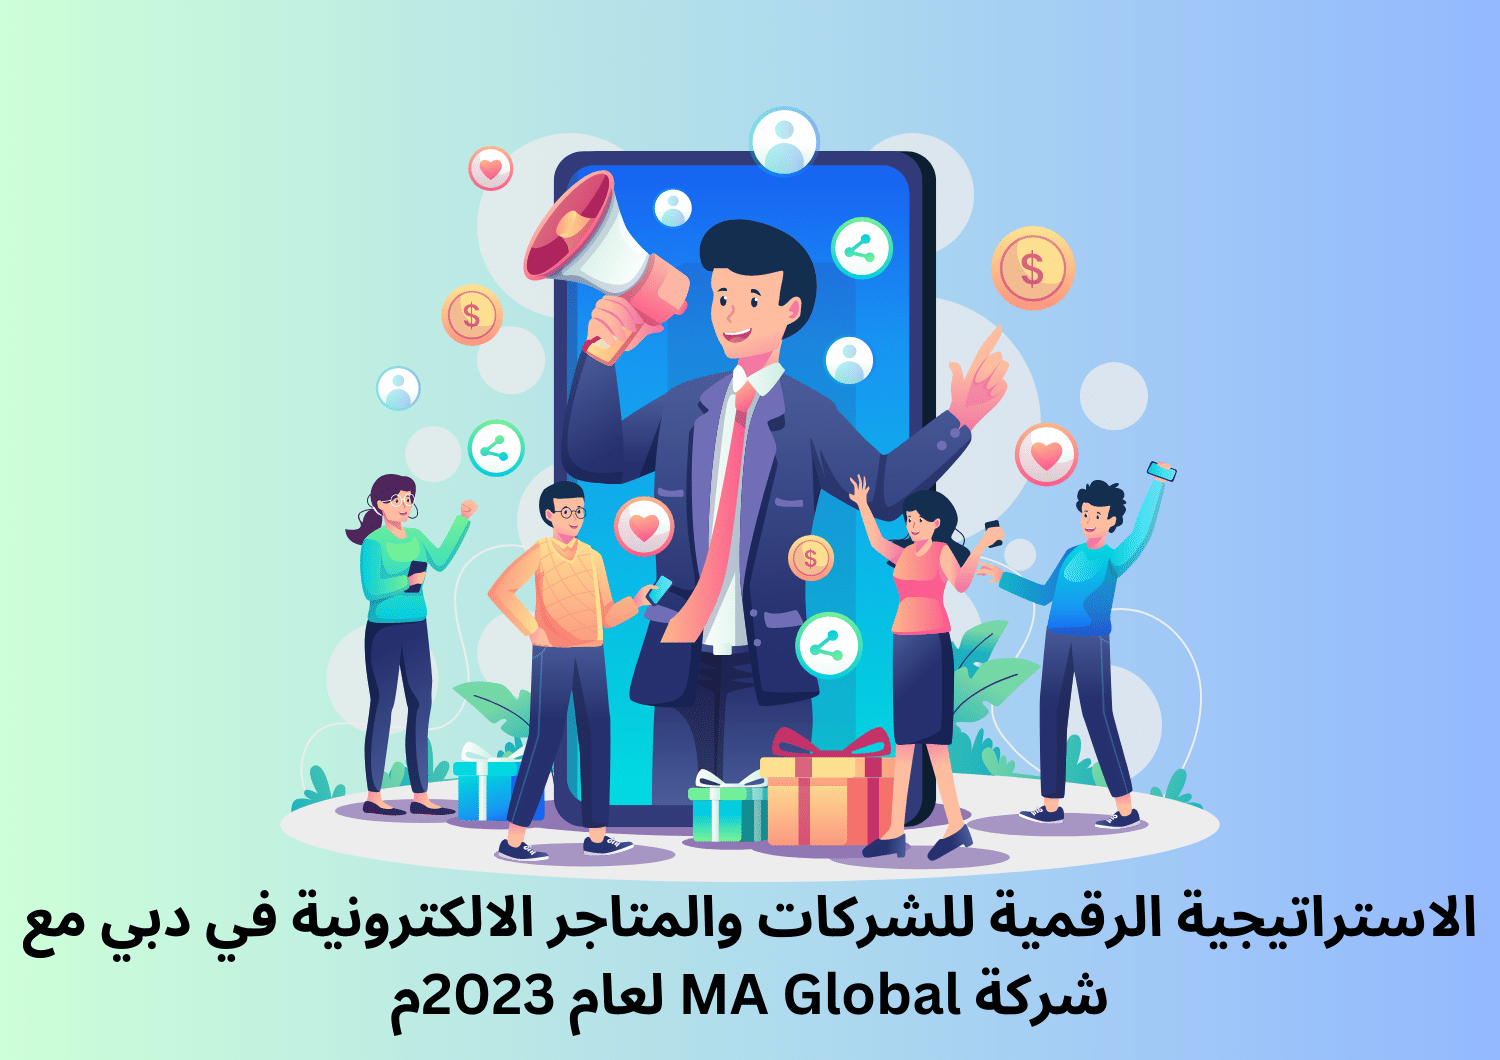 الاستراتيجية الرقمية للشركات والمتاجر الالكترونية في دبي مع شركة MA Global لعام 2023م